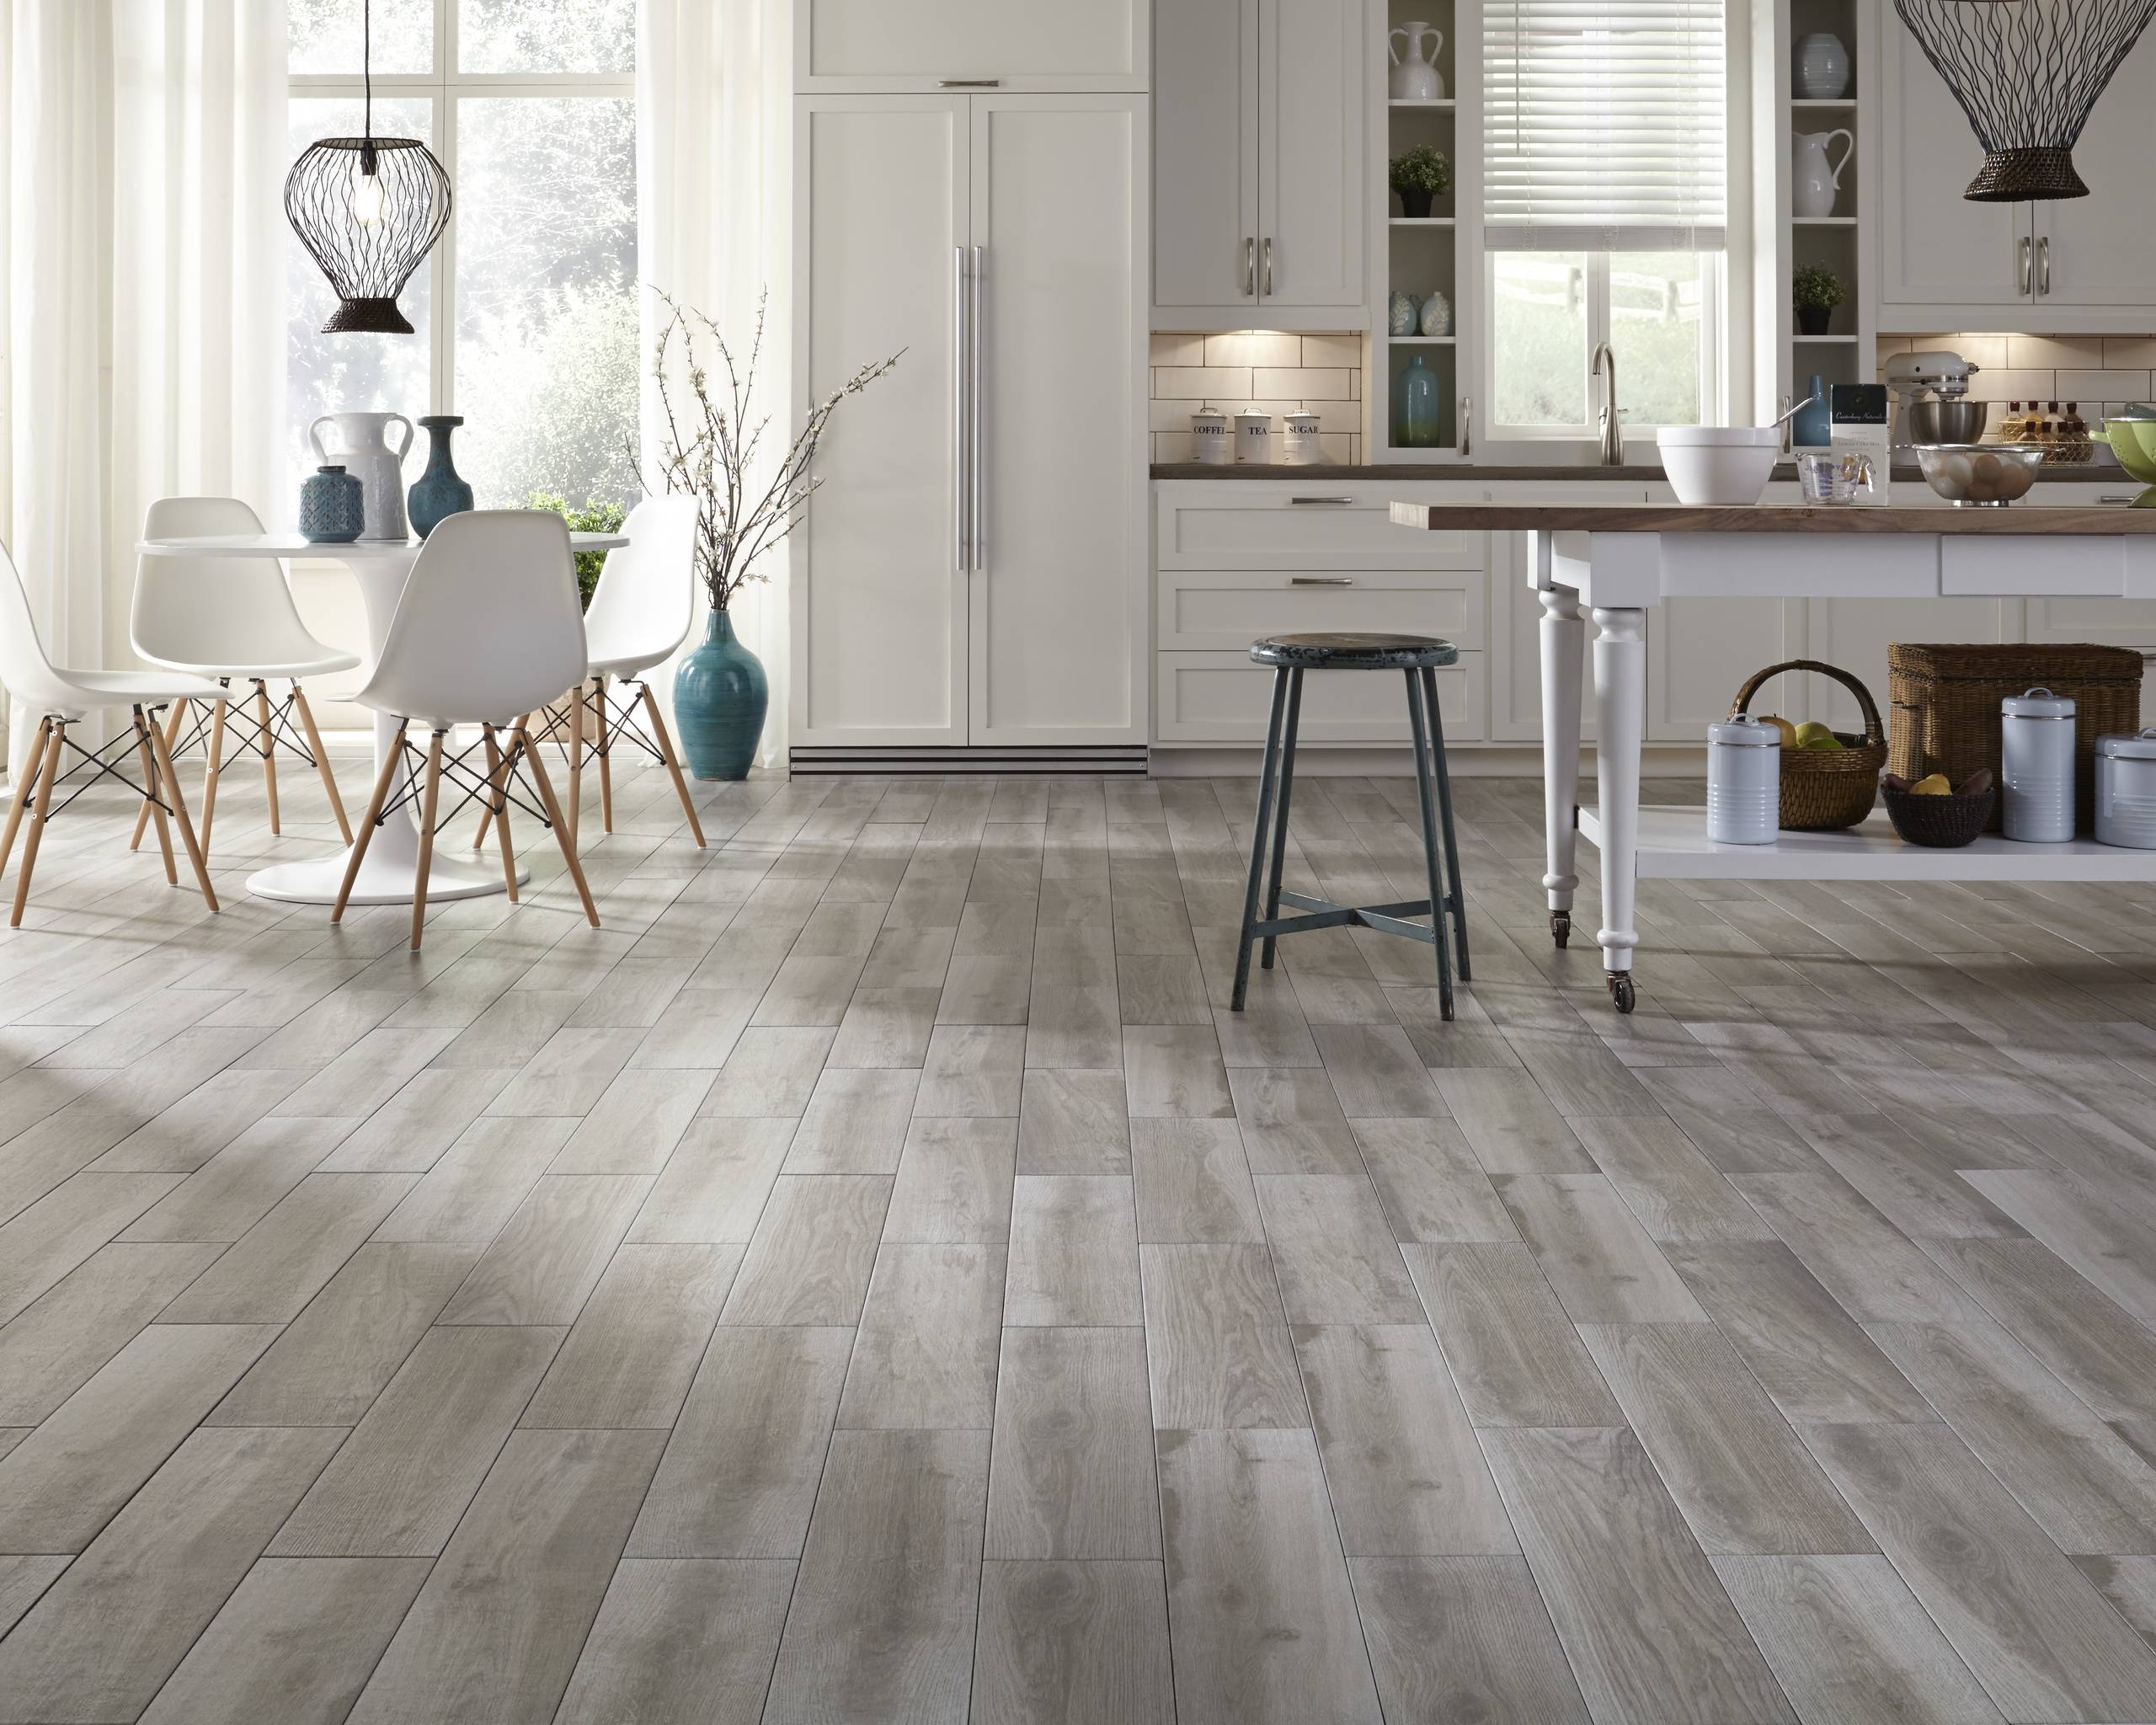 kitchen floor light wood tile